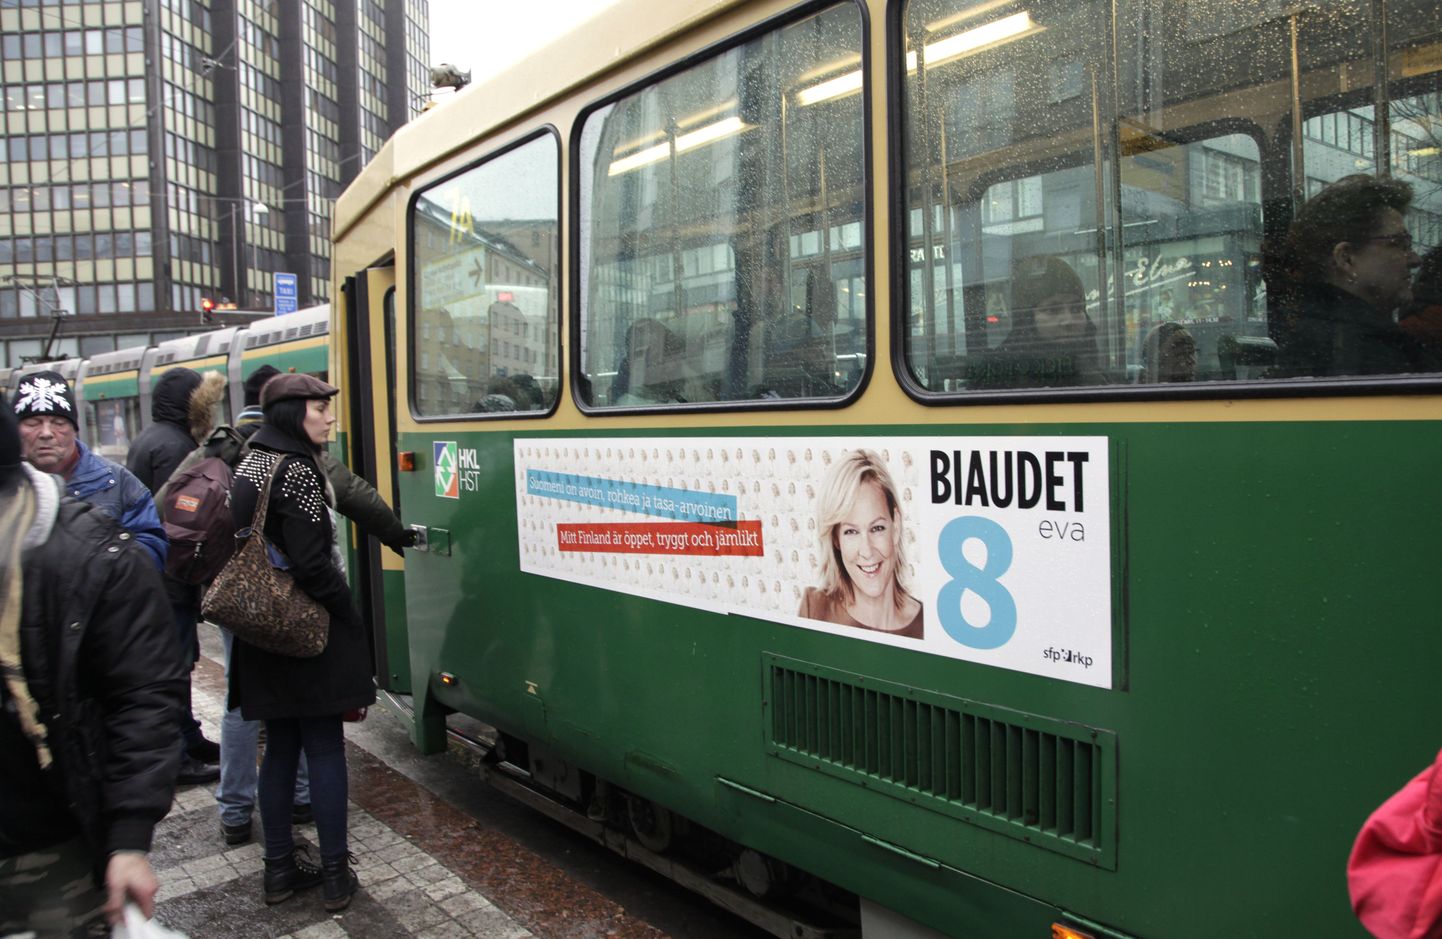 Helsingi tramm Rootsi Rahvapartei presidendikandidaadi Eva Biaudet' pildiga.